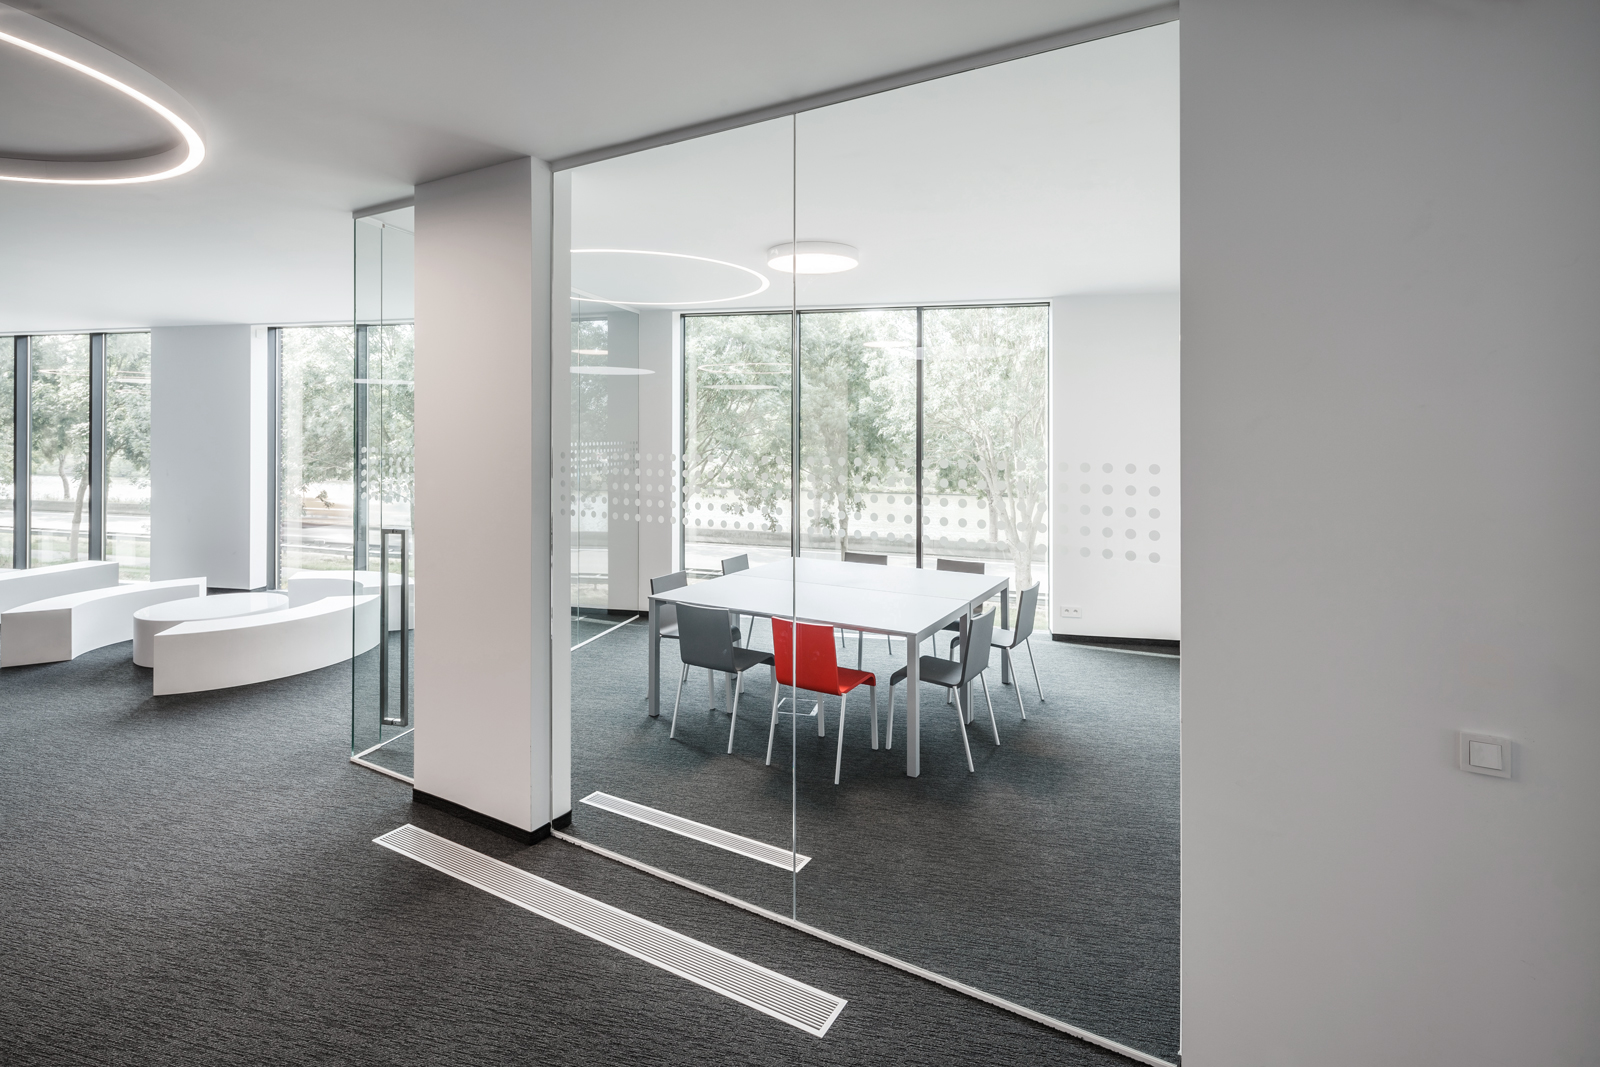 De Foyer en AuditoRium4 beschikt ook over een kleine vergaderzaal voor meetings tot 8 personen